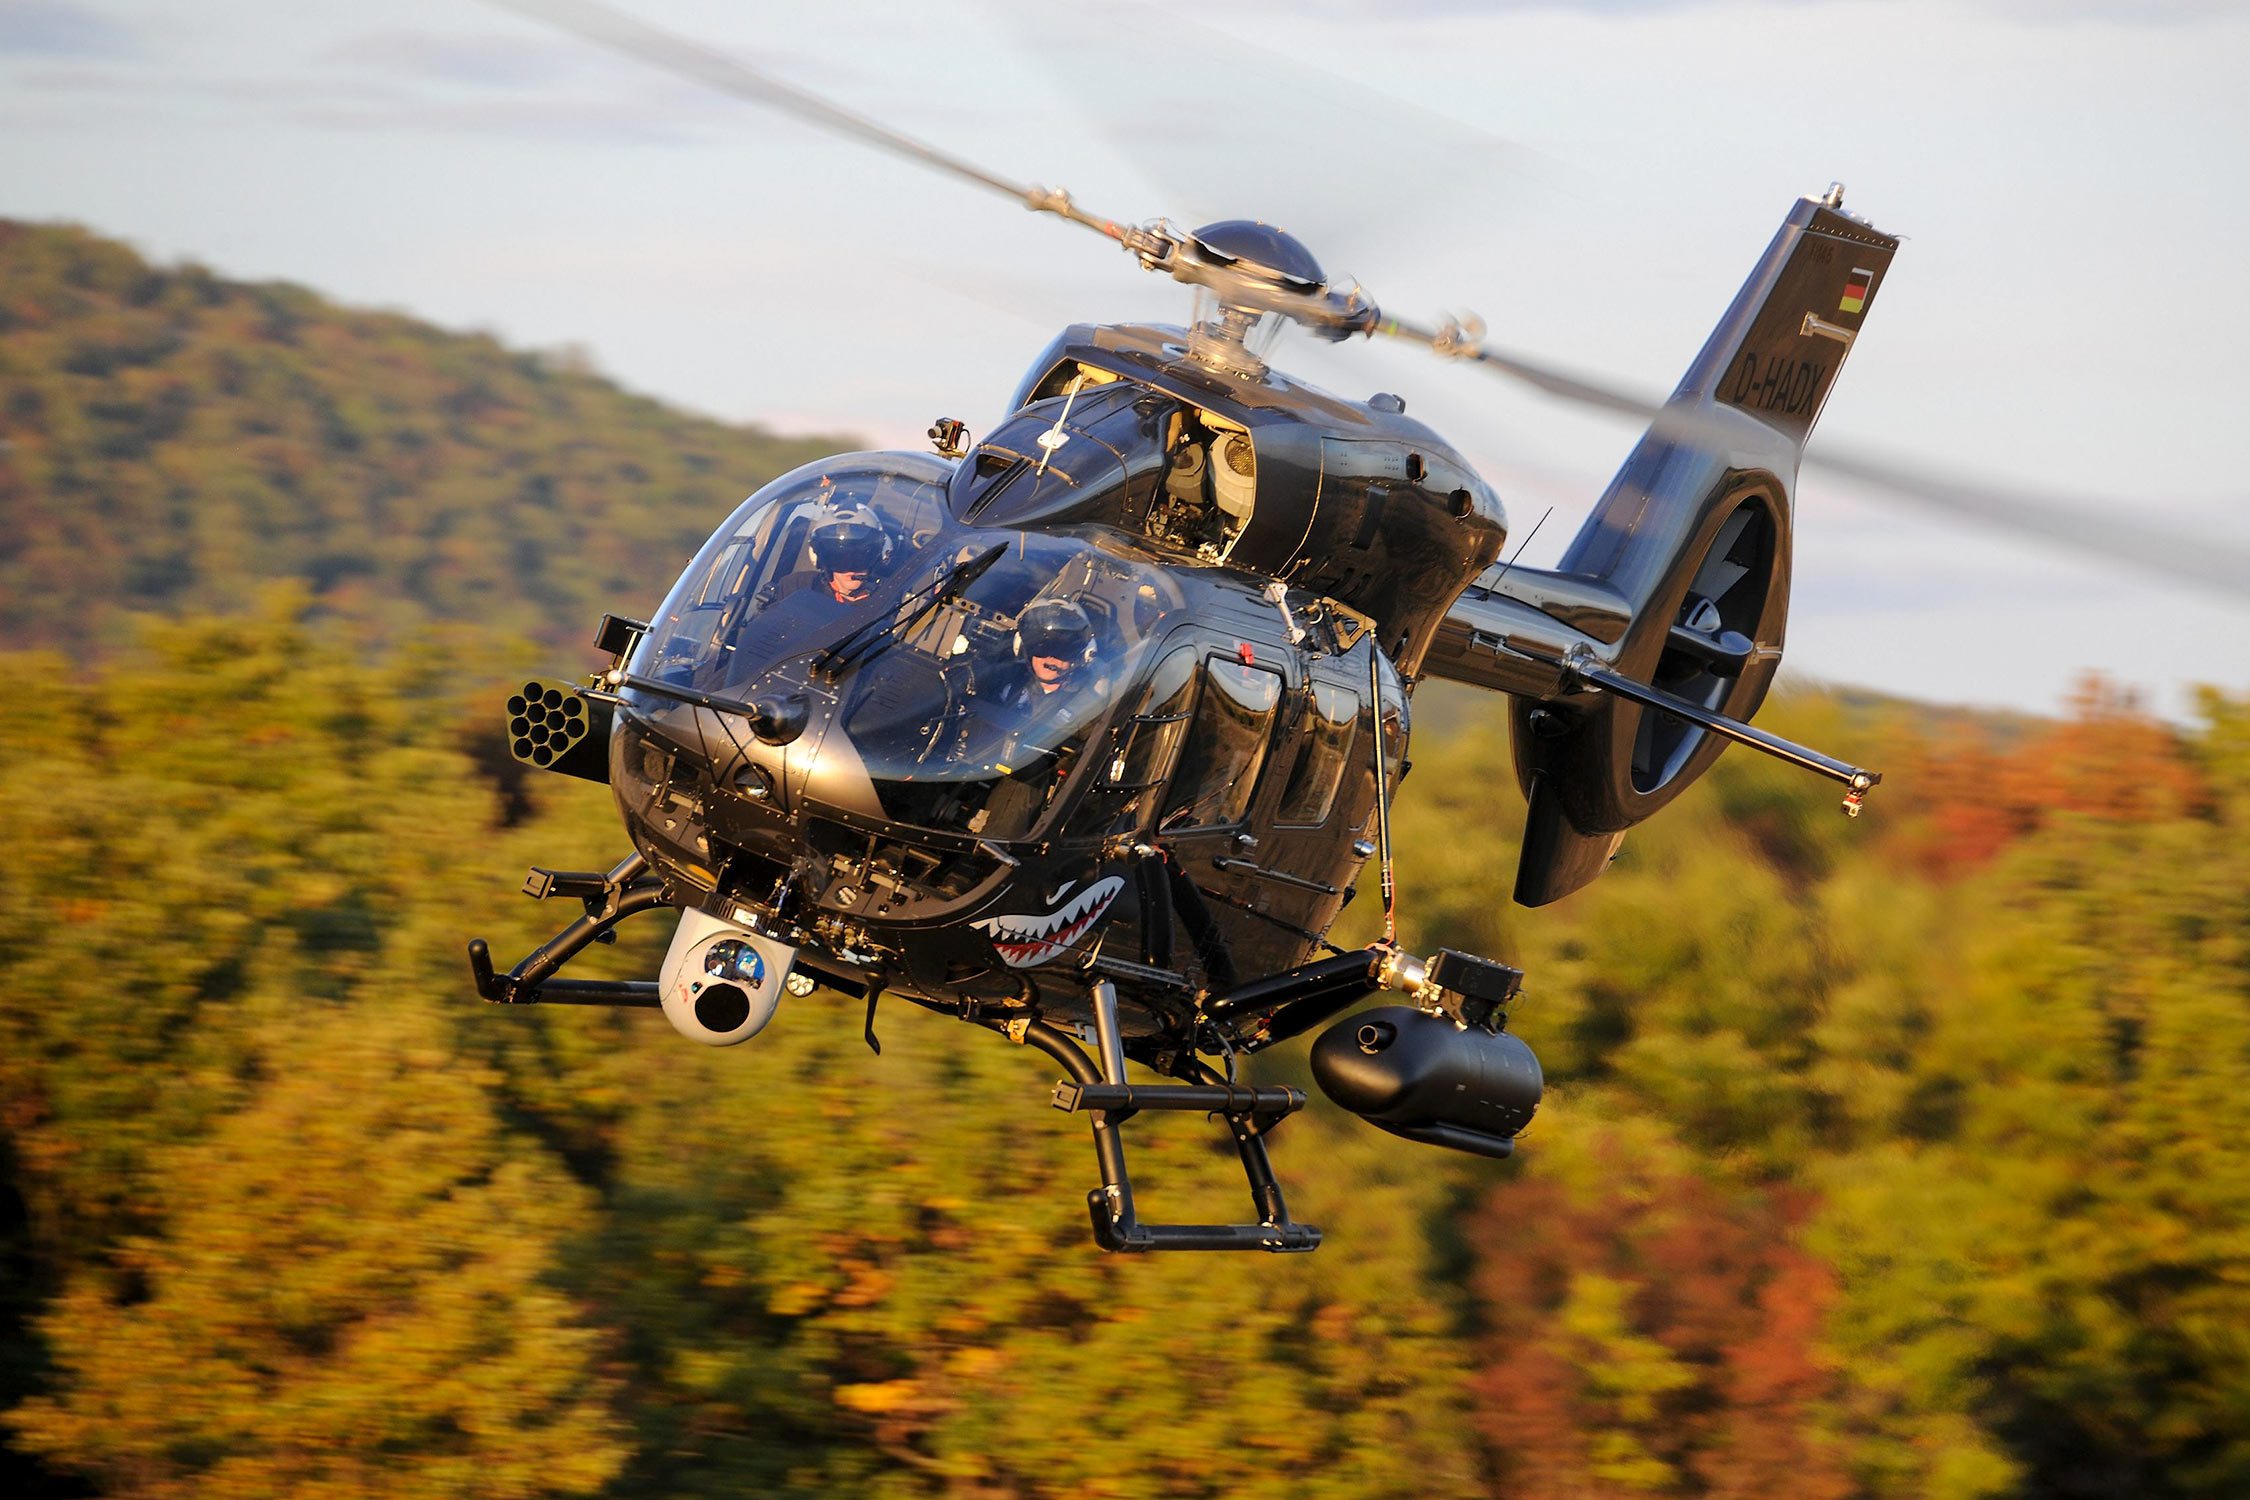 Alemania quiere gastar 3.050 millones de euros en helicópteros civiles Airbus H145M para eliminar los helicópteros de ataque Tigre